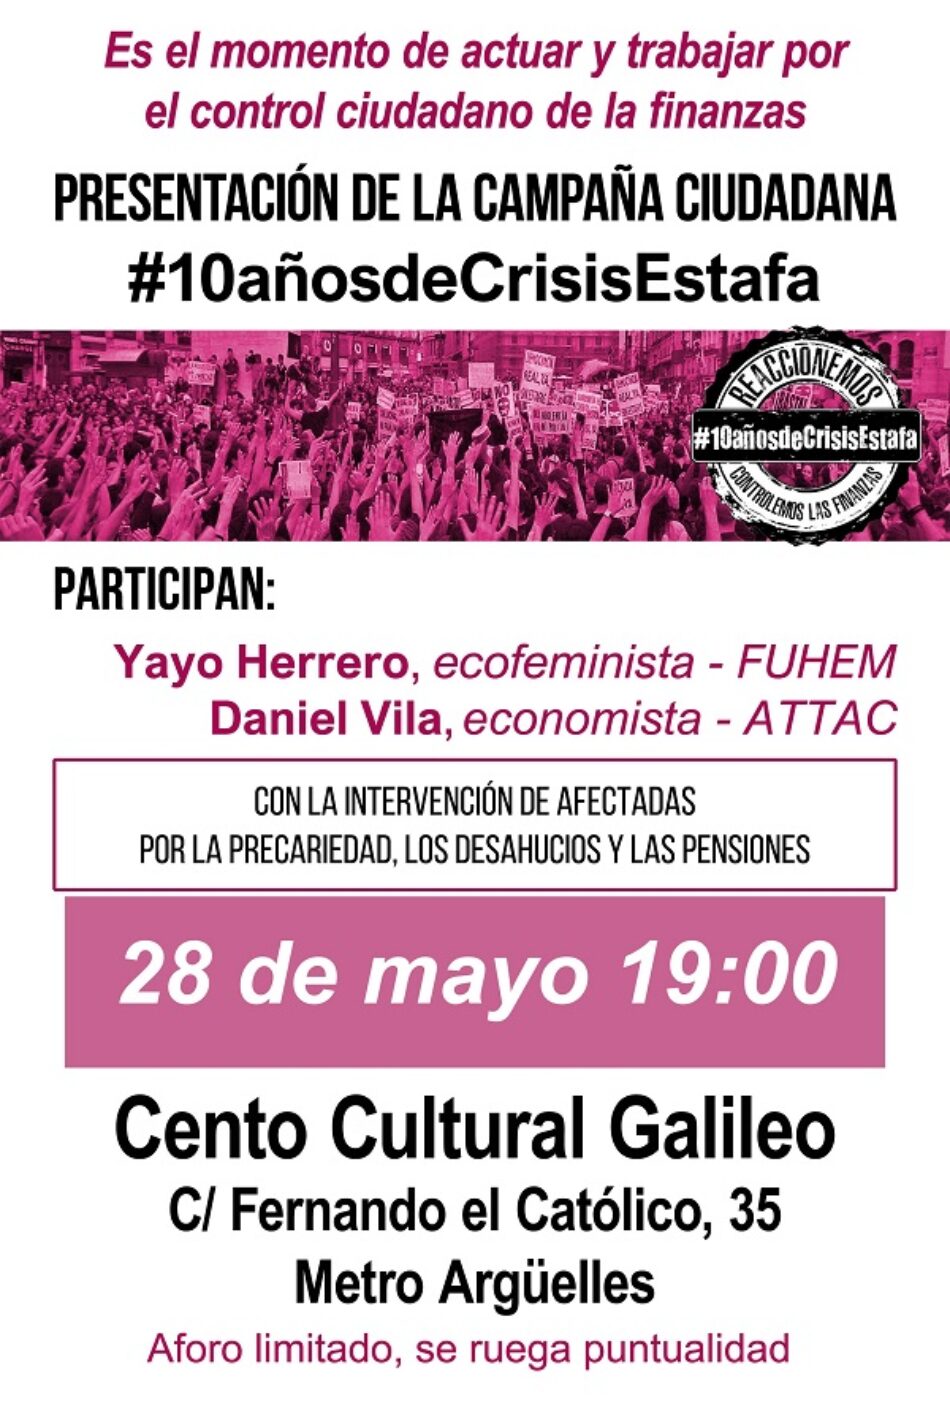 Presentación de la Campaña Ciudadana #10añosdeCrisisEstafa